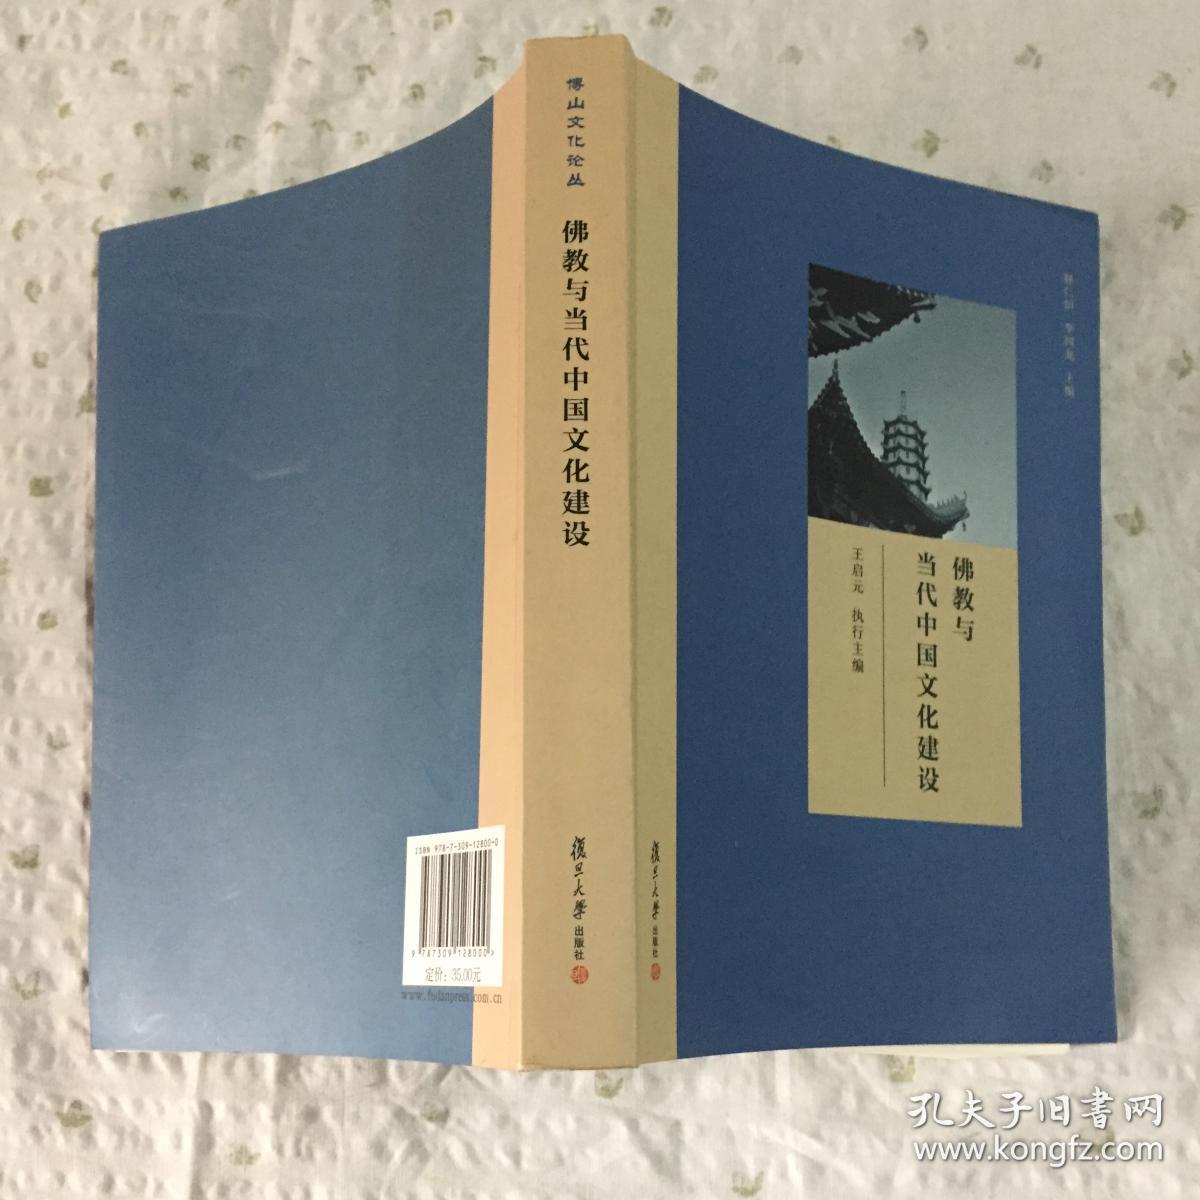 当代中国文论研究的观念与方法问题探讨